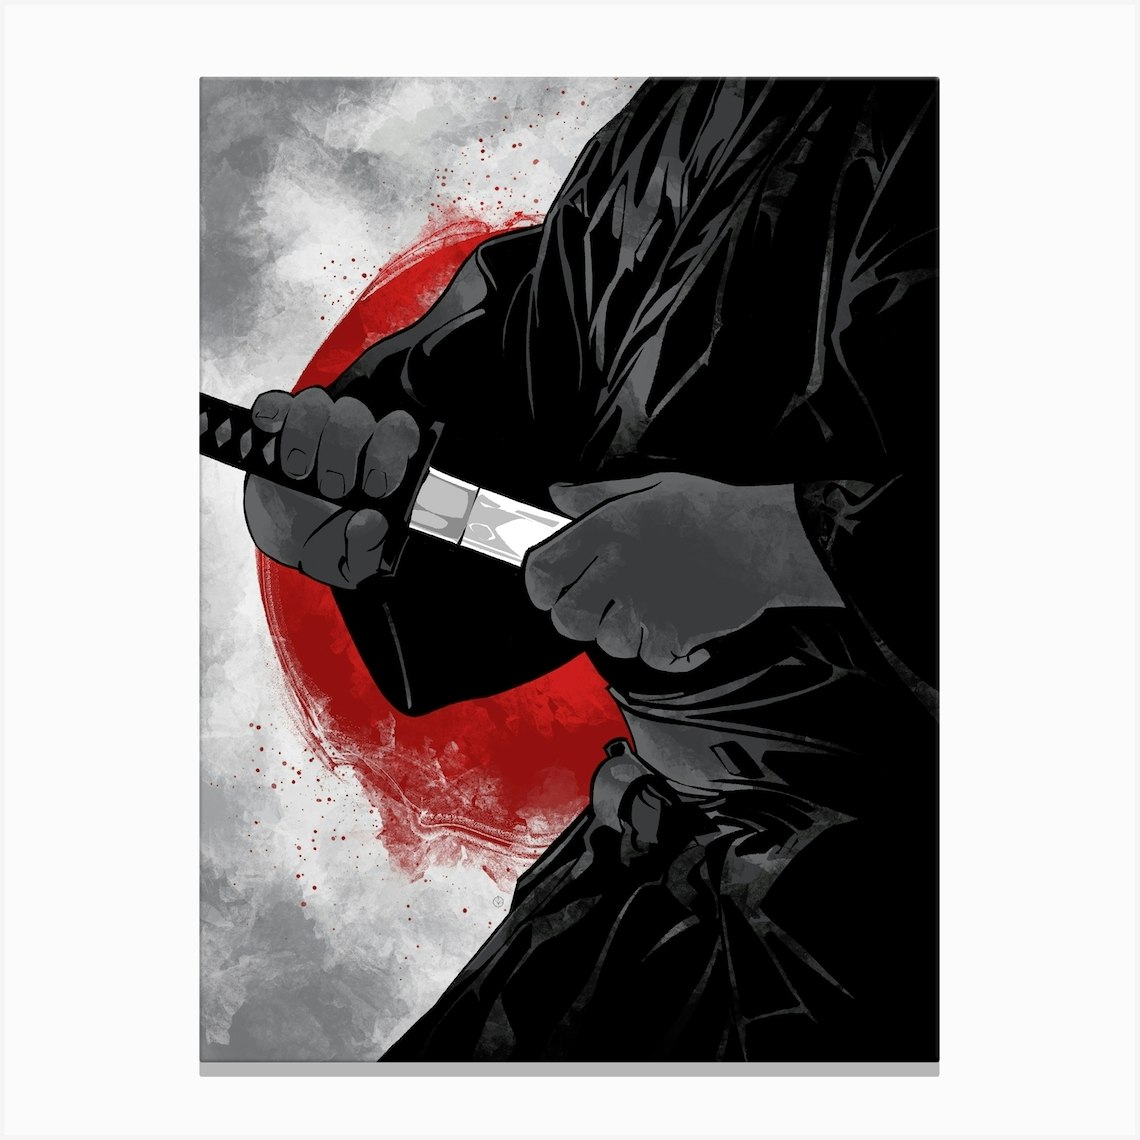 Samurai Warrior van Nikita Abakumov als poster, canvas print en meer